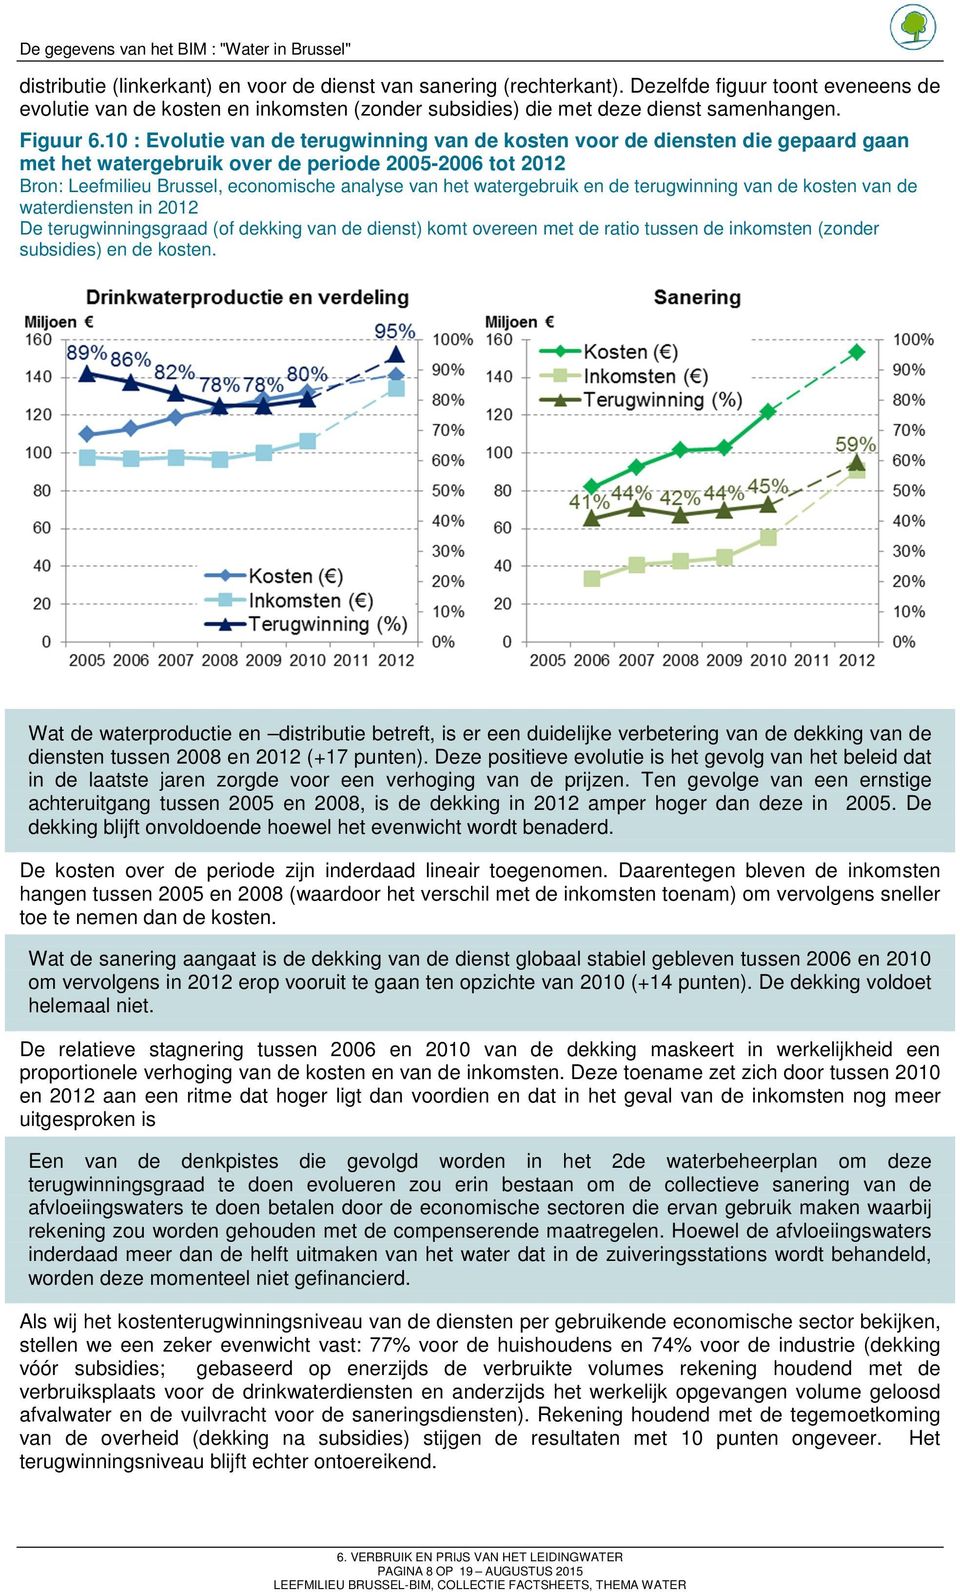 10 : Evolutie van de terugwinning van de kosten voor de diensten die gepaard gaan met het watergebruik over de periode 2005-2006 tot 2012 Bron: Leefmilieu Brussel, economische analyse van het